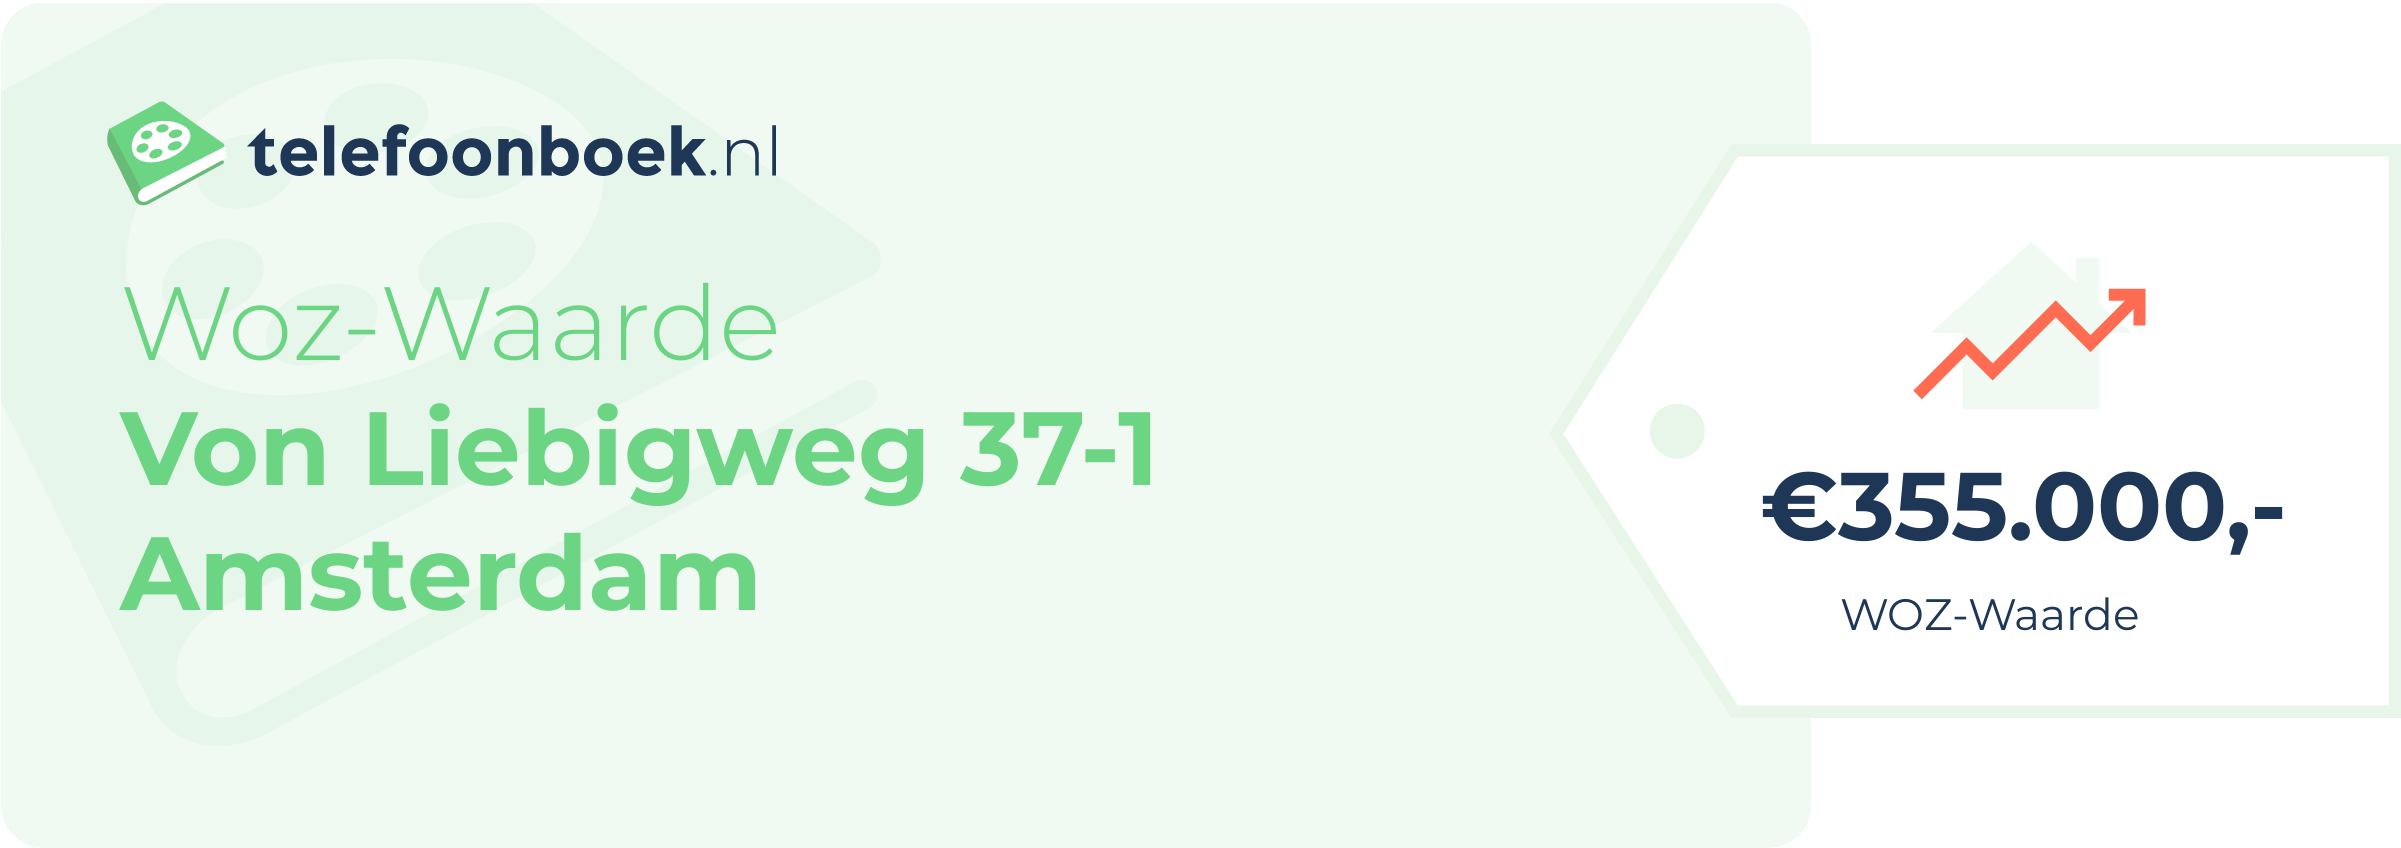 WOZ-waarde Von Liebigweg 37-1 Amsterdam